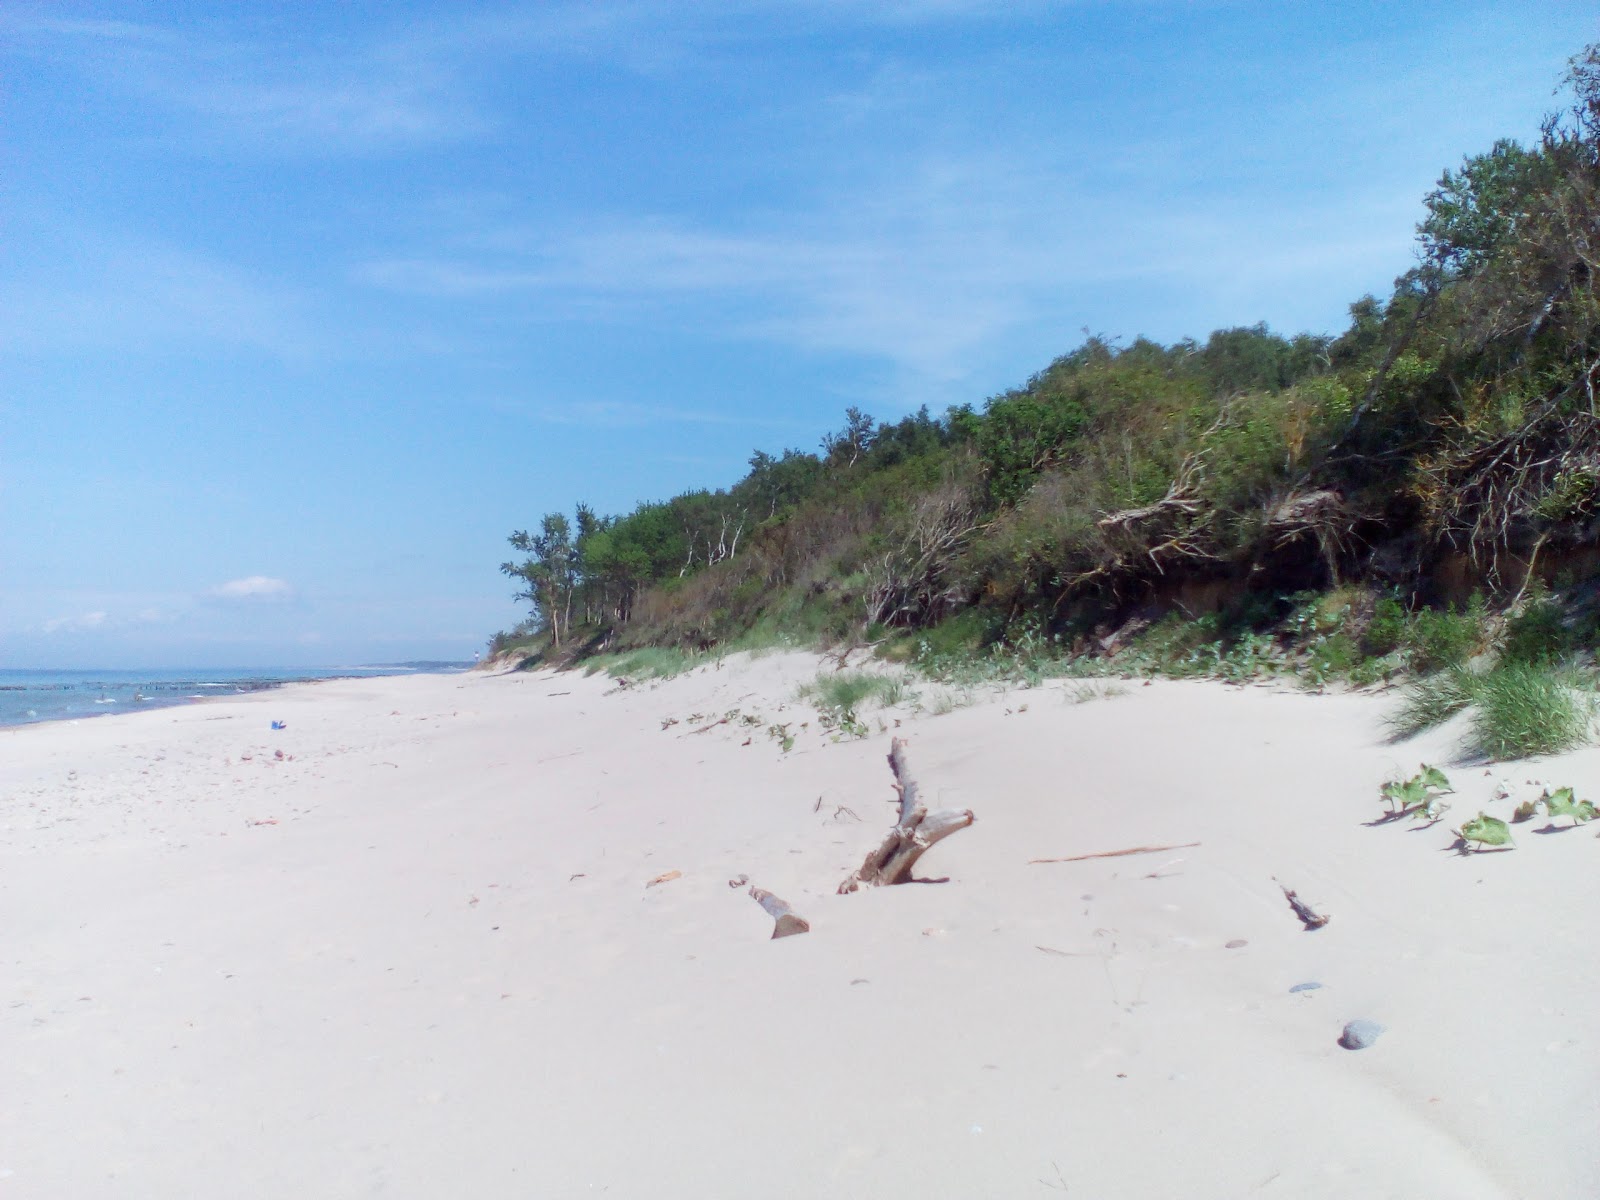 Zdjęcie Lestniza k moryu z powierzchnią jasny piasek